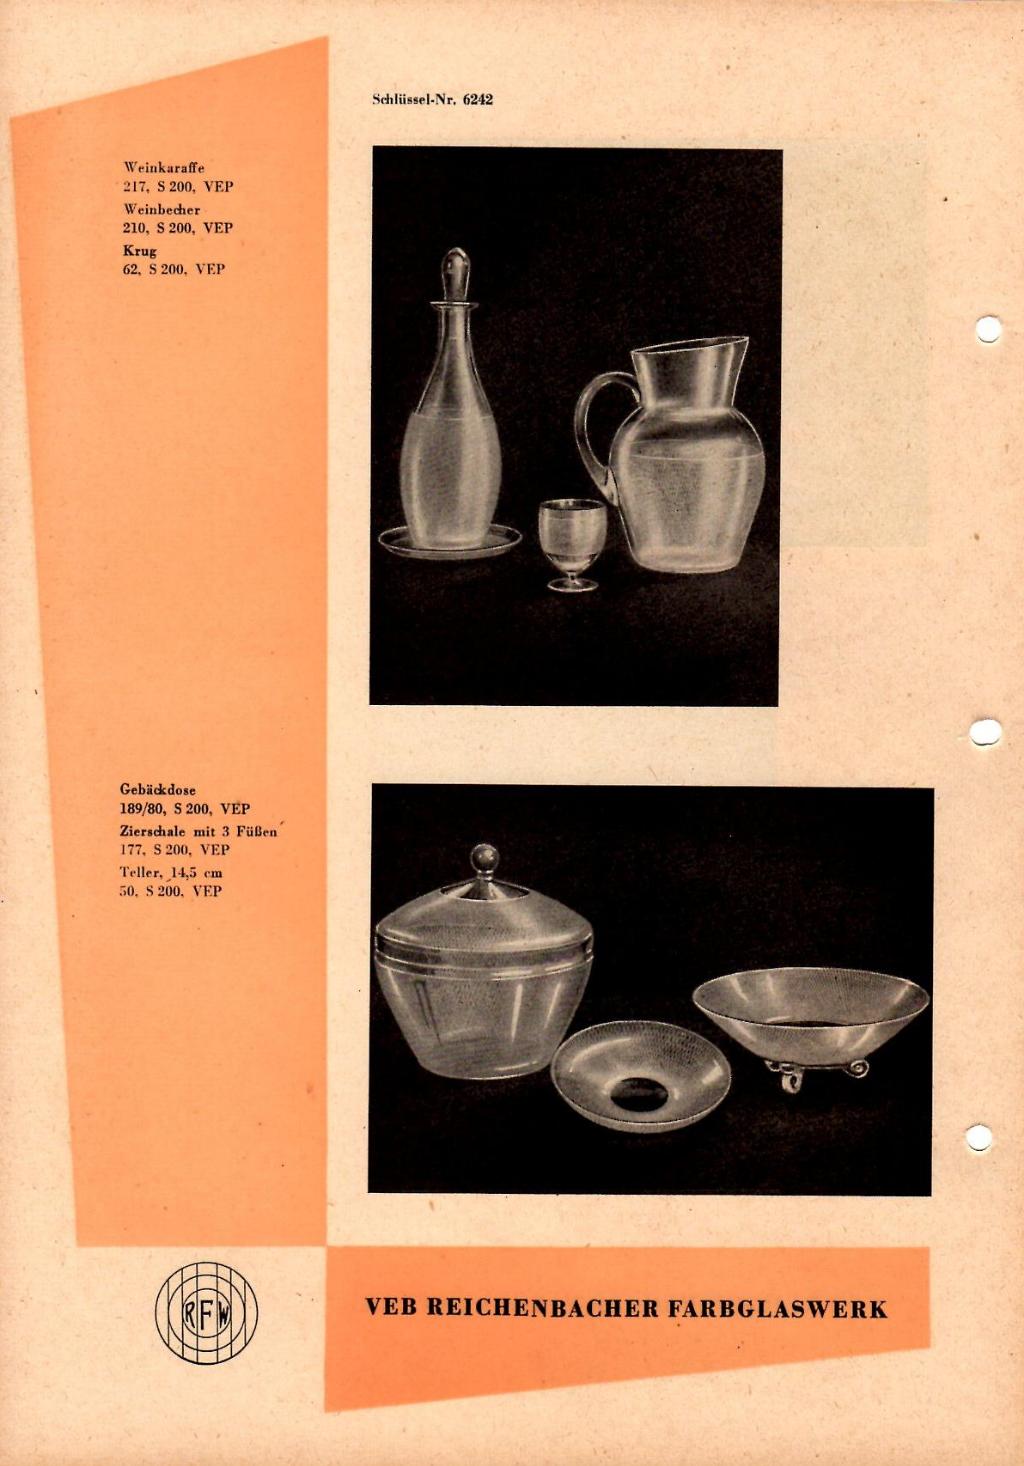 "Reichenbacher Farbglaswerke 1957"